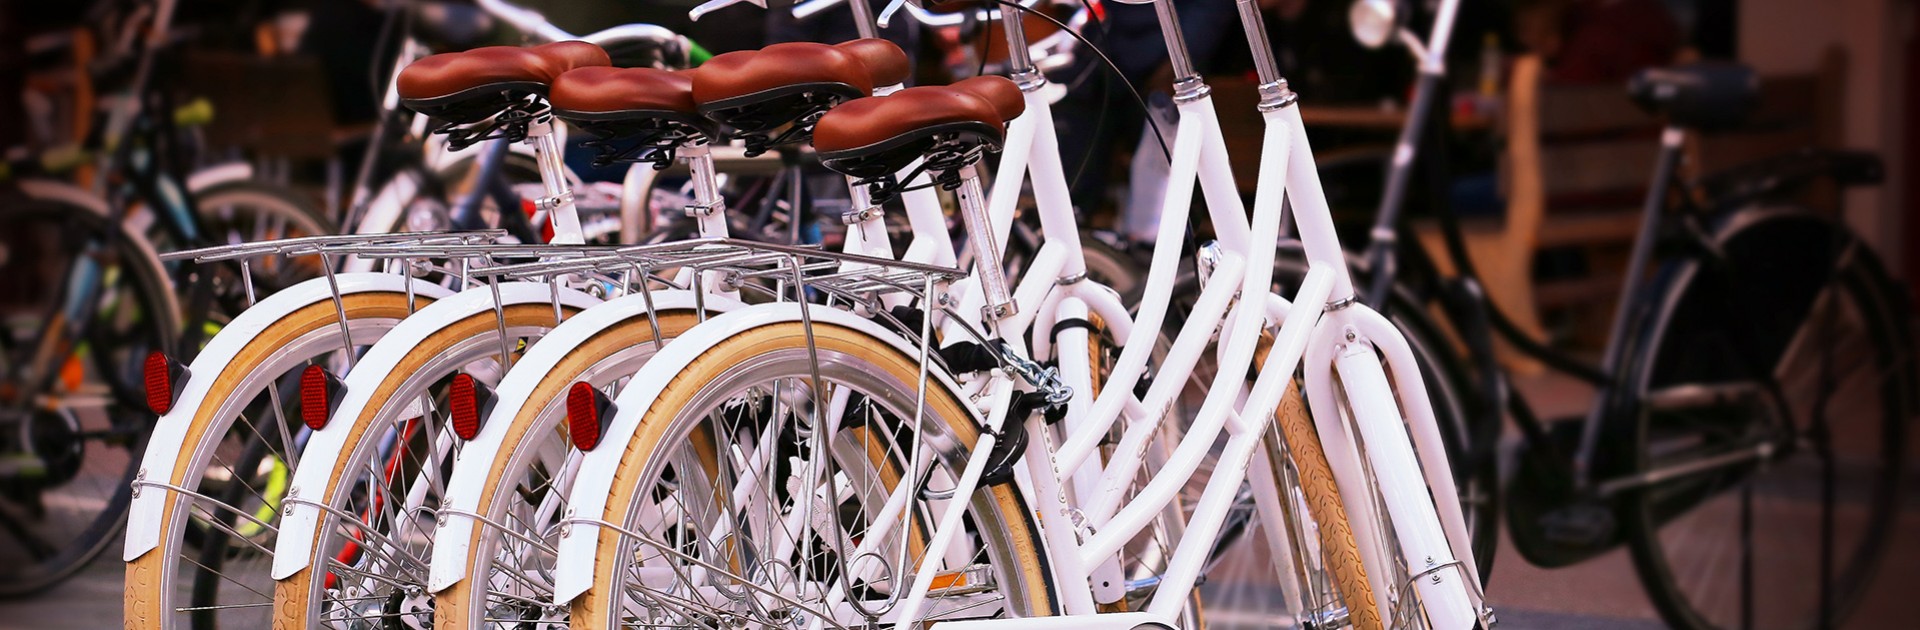 Fahrräder - © yorgunum/pixabay.com